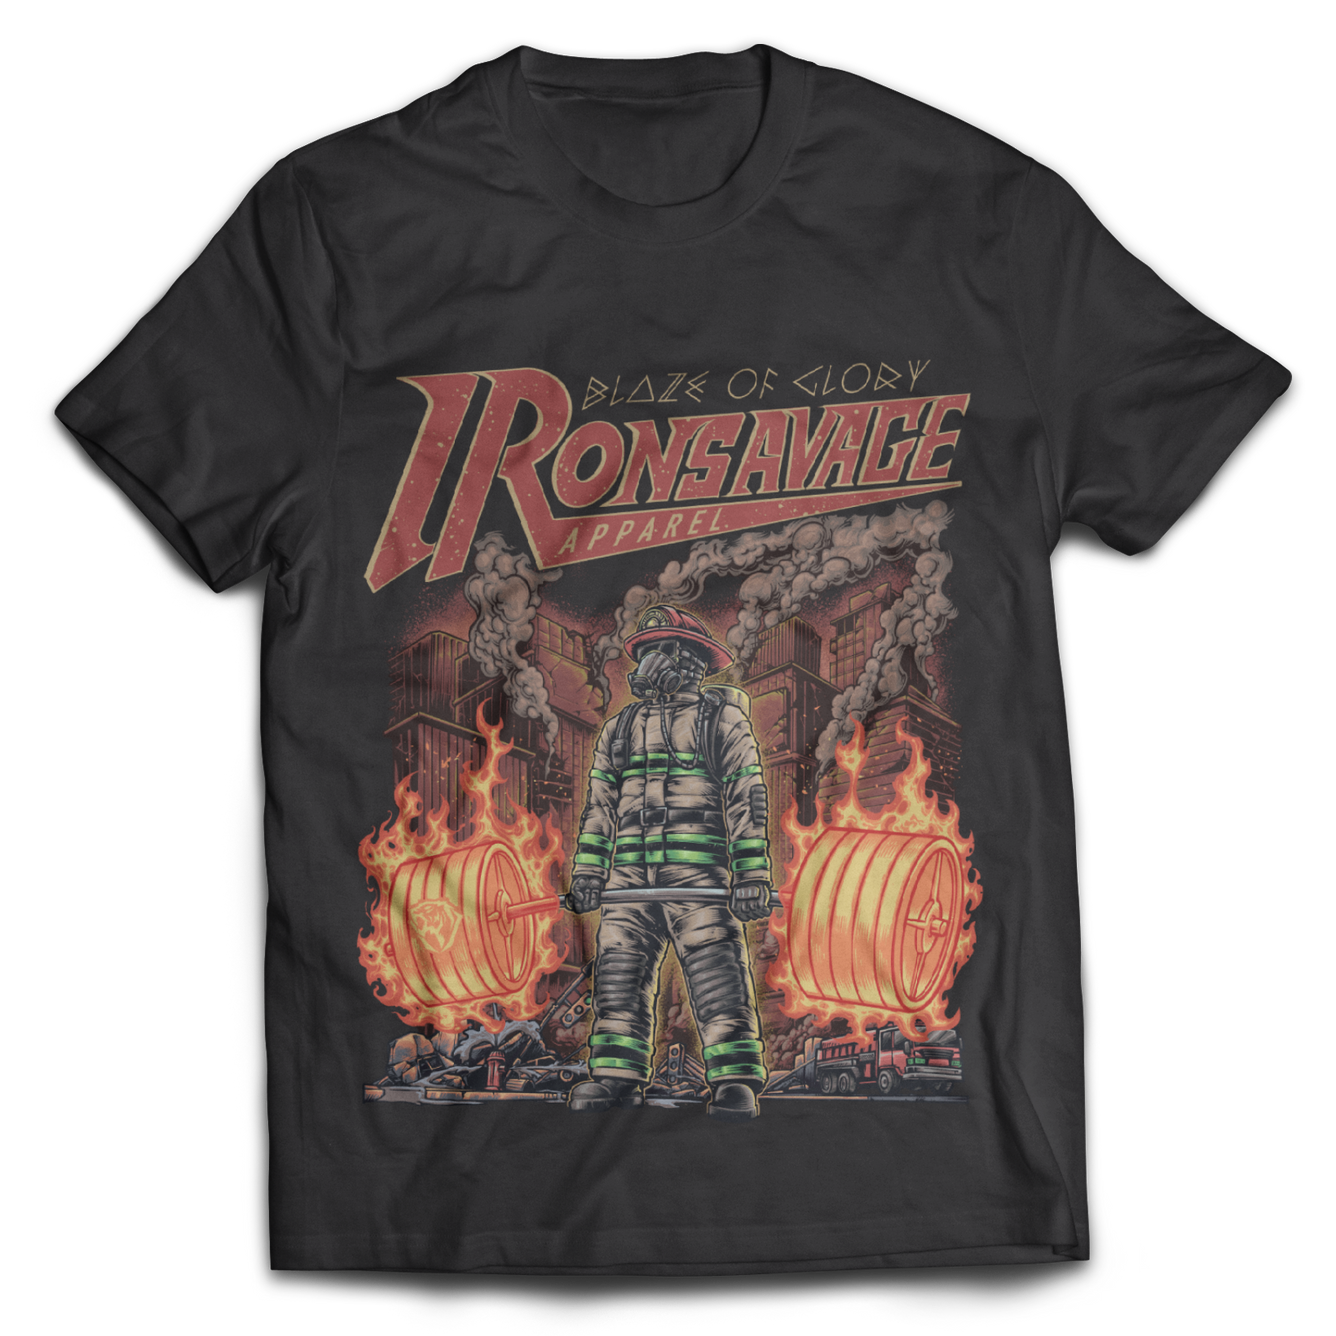 Firefighter: Blaze of glory T-Shirt